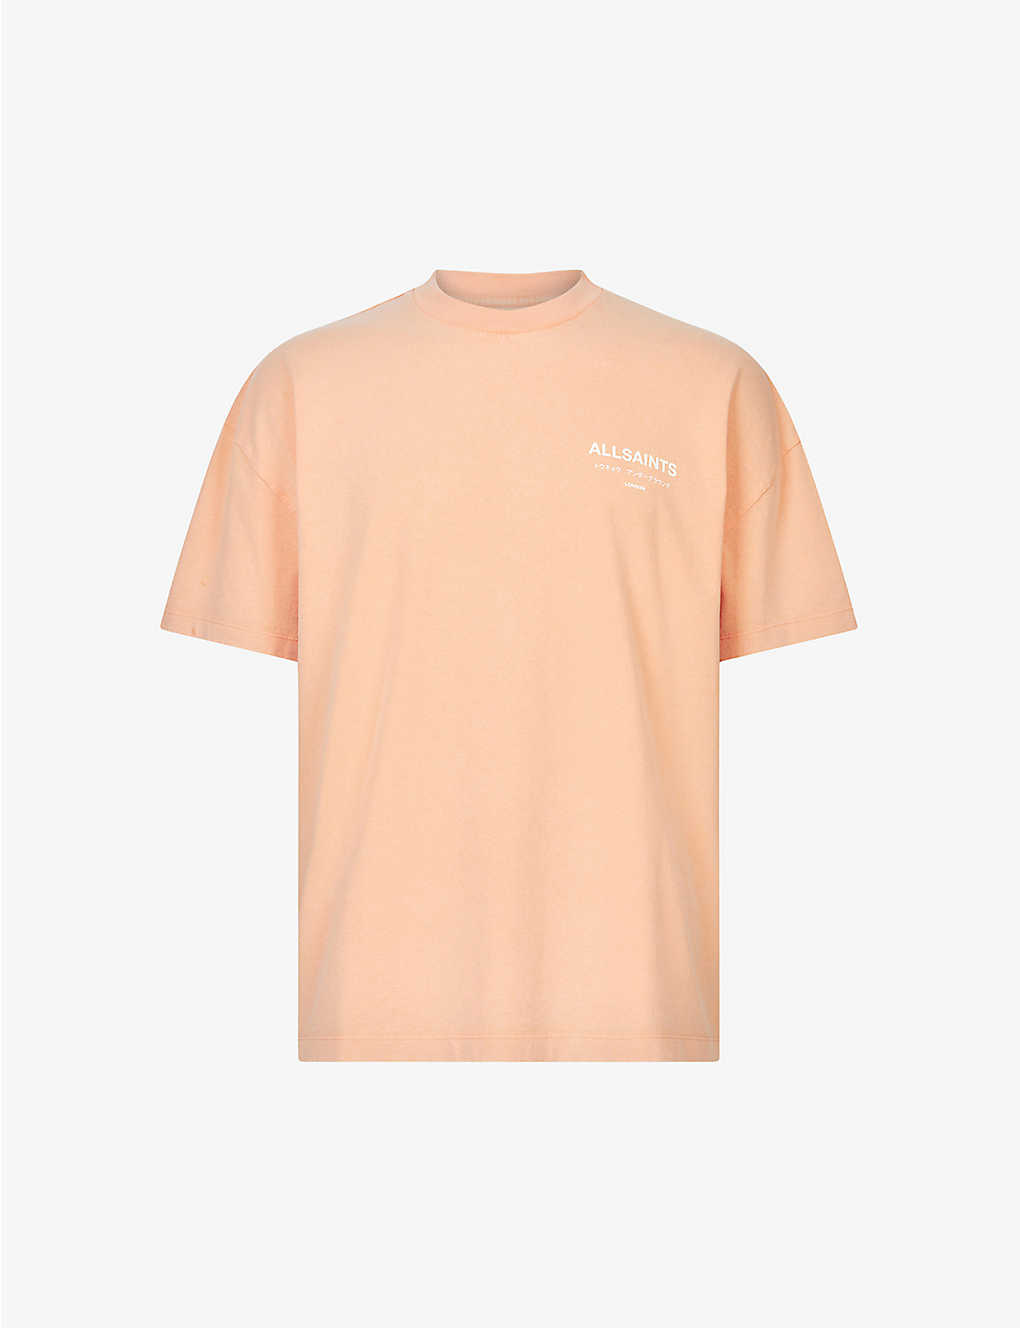 Allsaints Underground Graphic-print Cotton T-shirt In Orange/cala Wh